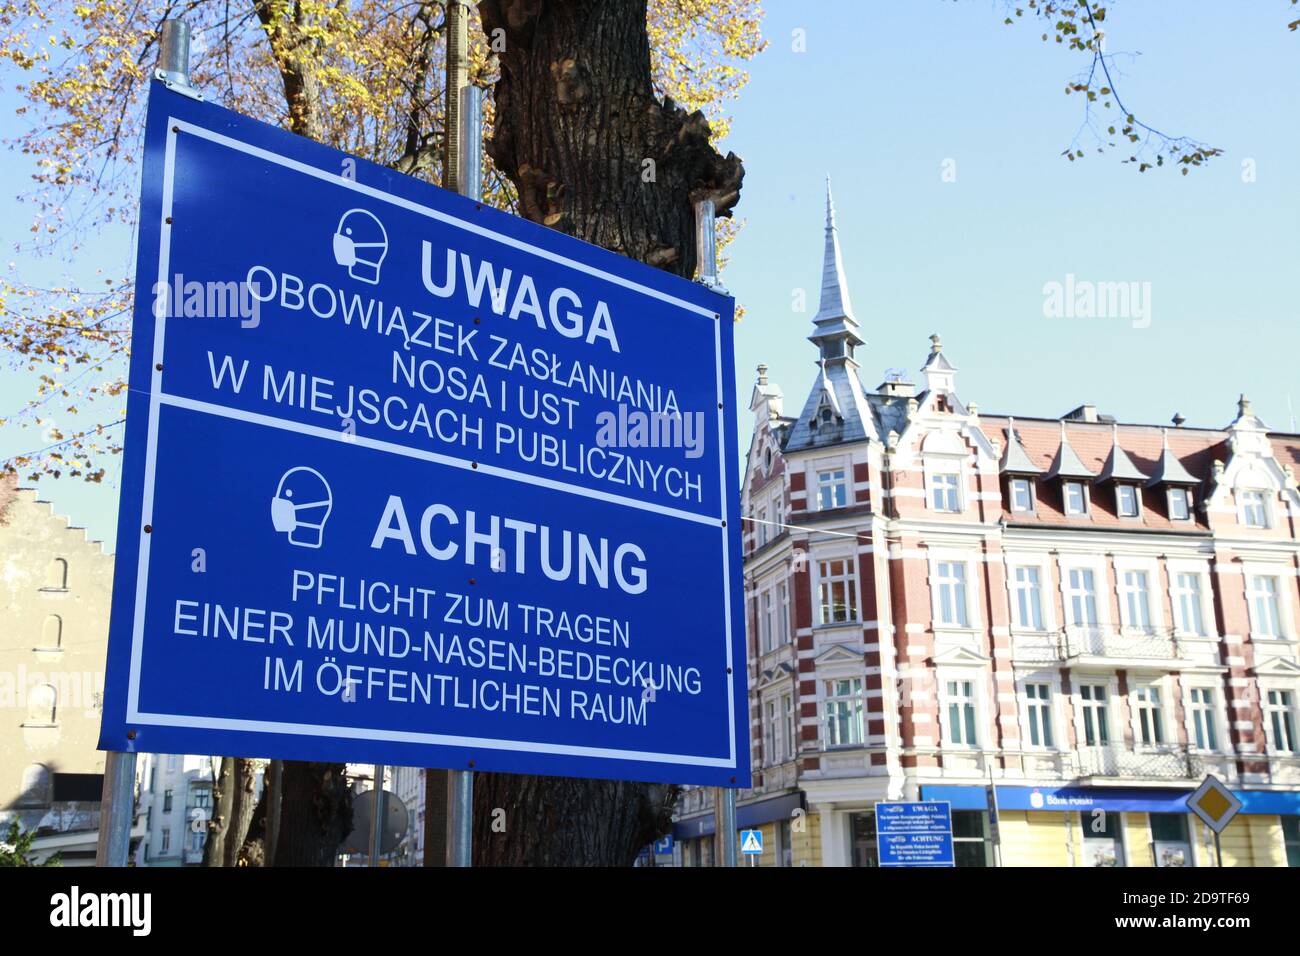 Ein Schild an der deutsch/polnischen Grenze in Görlitz/Zgorzelec zeigt Achtung - Pflicht zum Tragen einer Mund-Nasen-Bedeckung im öffentlichen Raum Zg Stock Photo